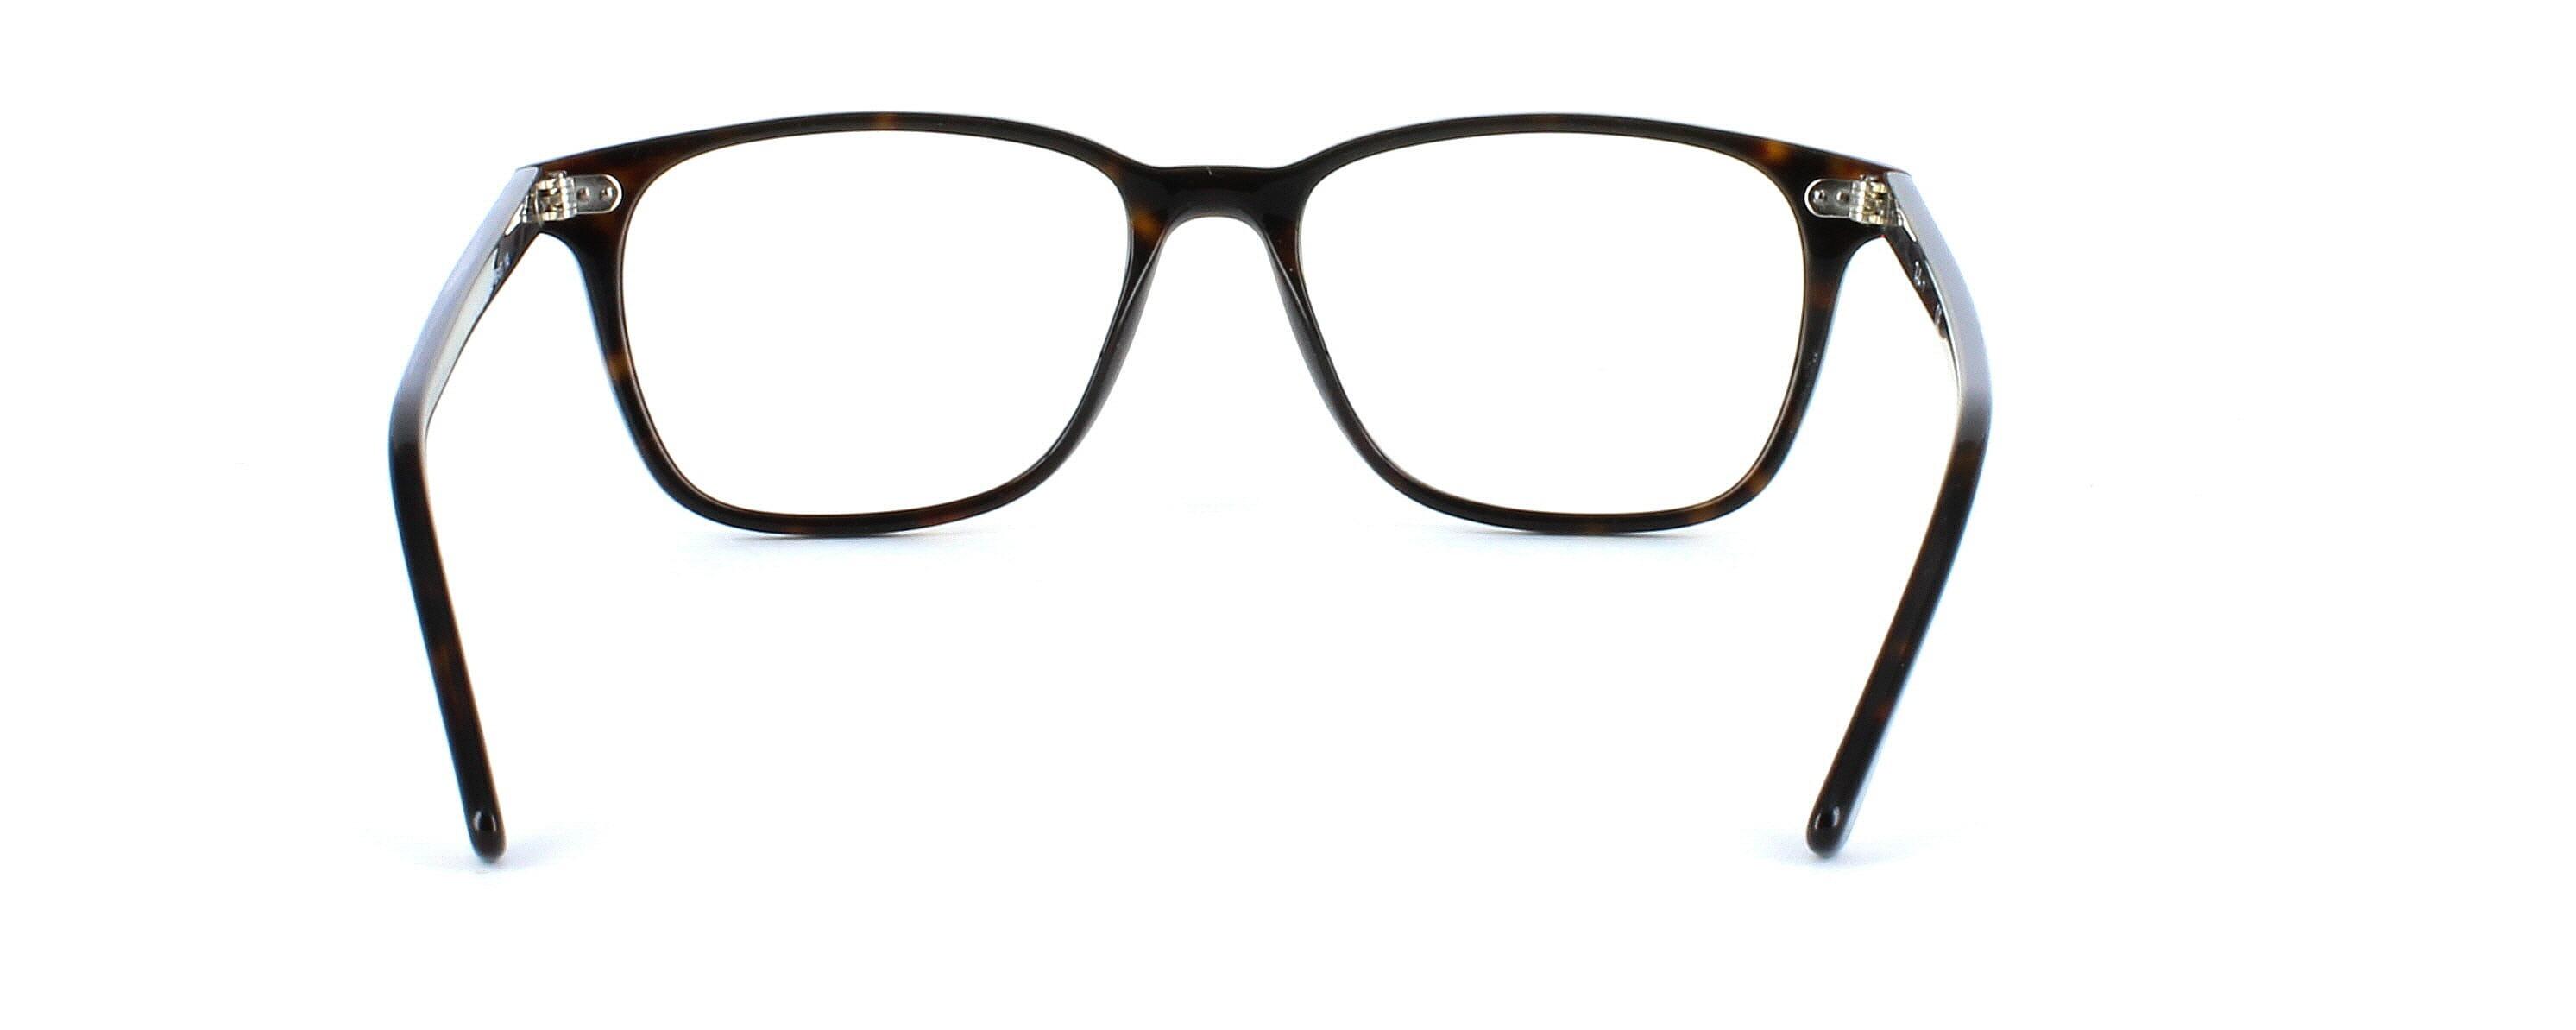 Ray Ban 7119 2000 - Shiny Tortoise - Unisex rectangular shaped acetate glasses  - image view 4